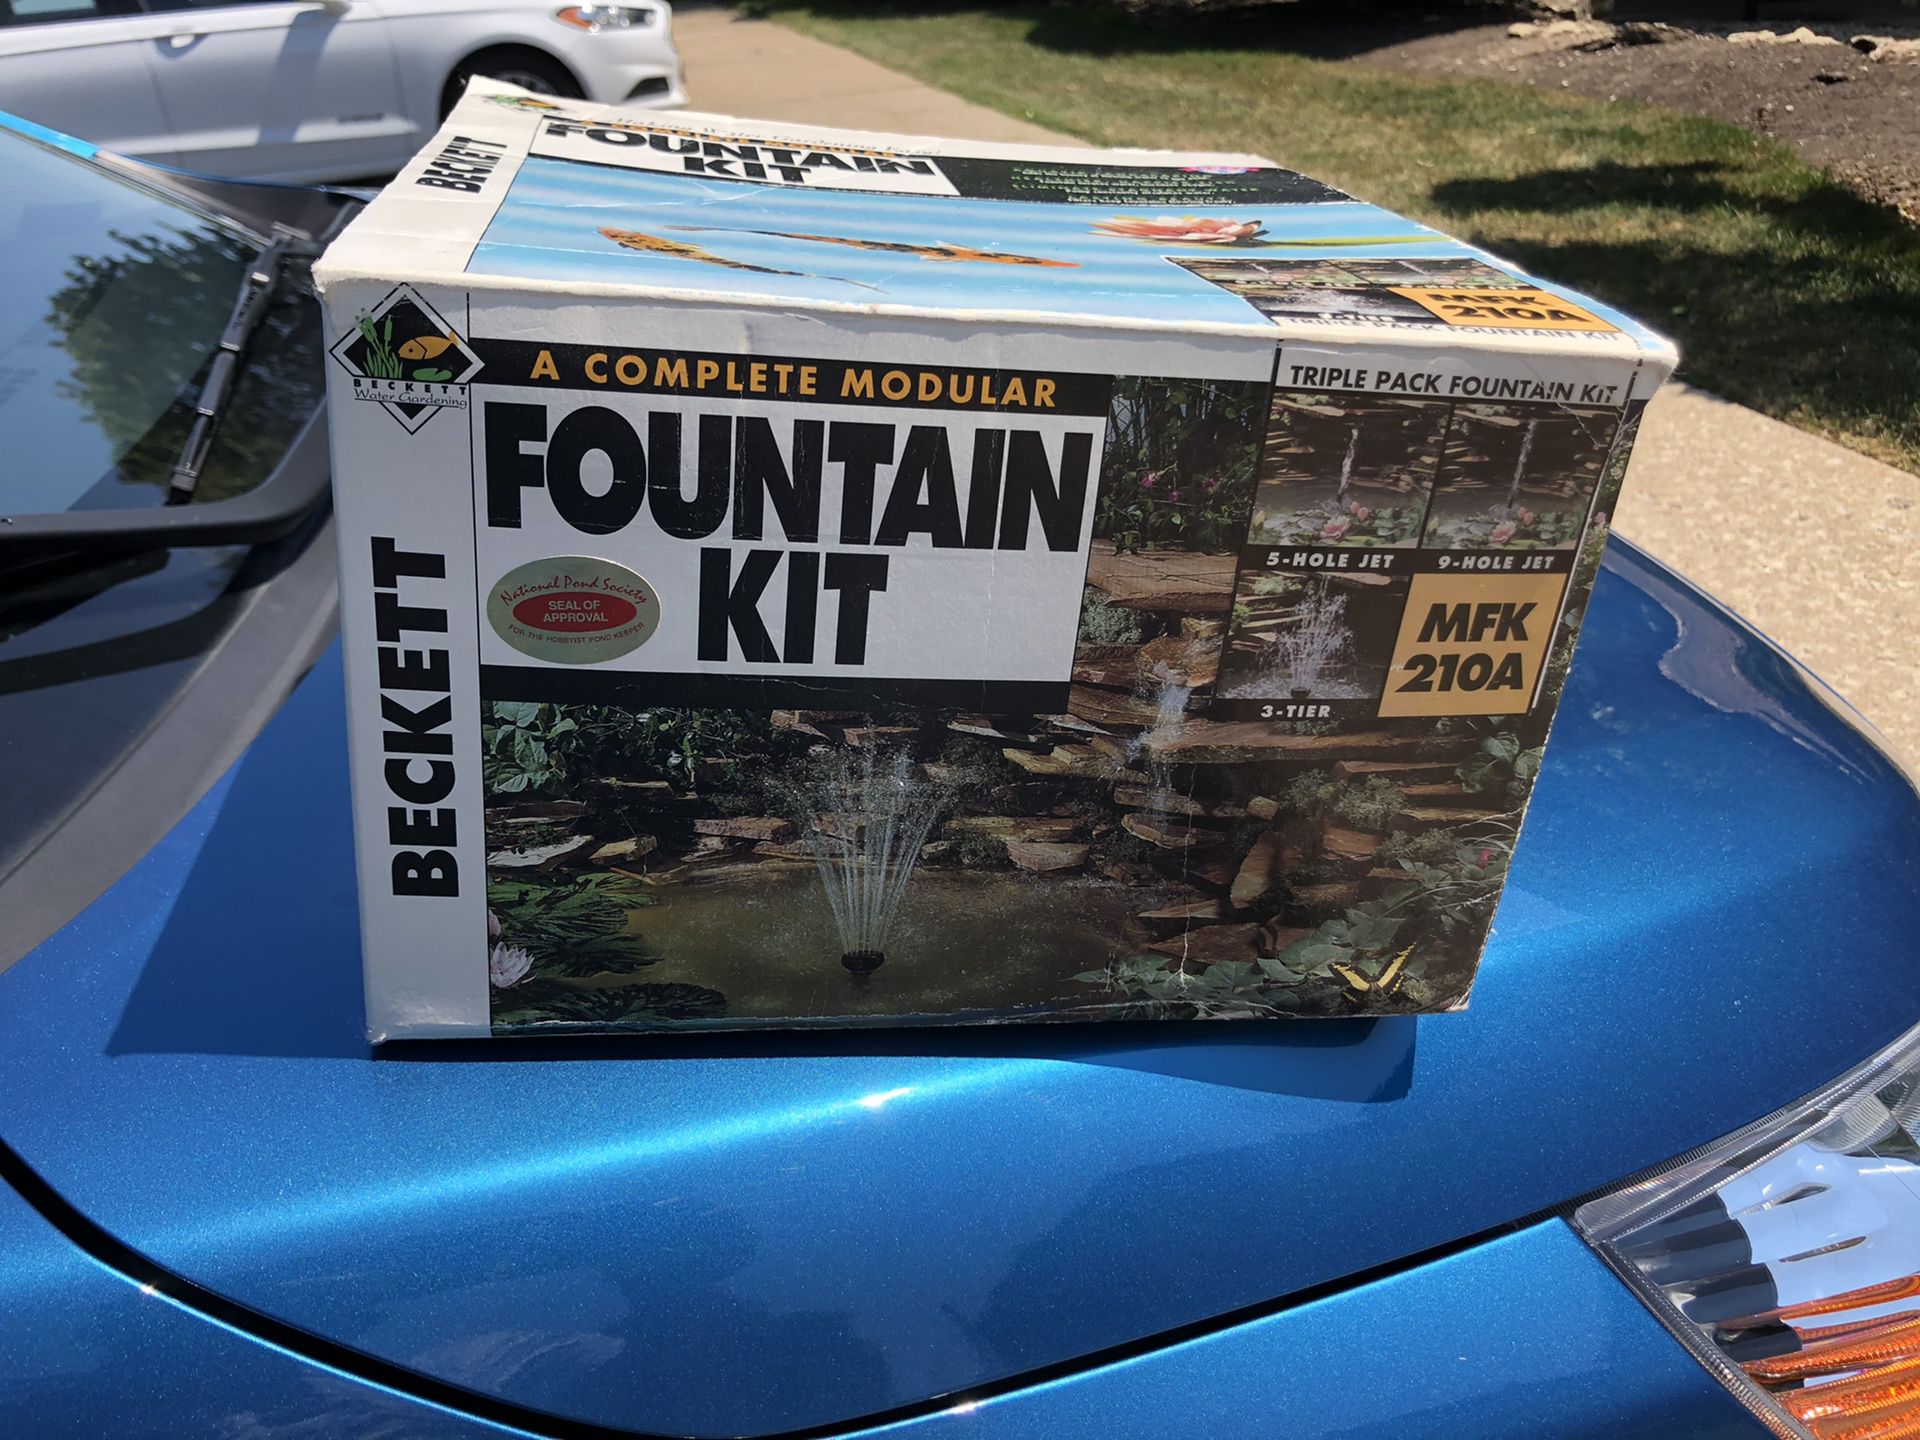 Fountain kit